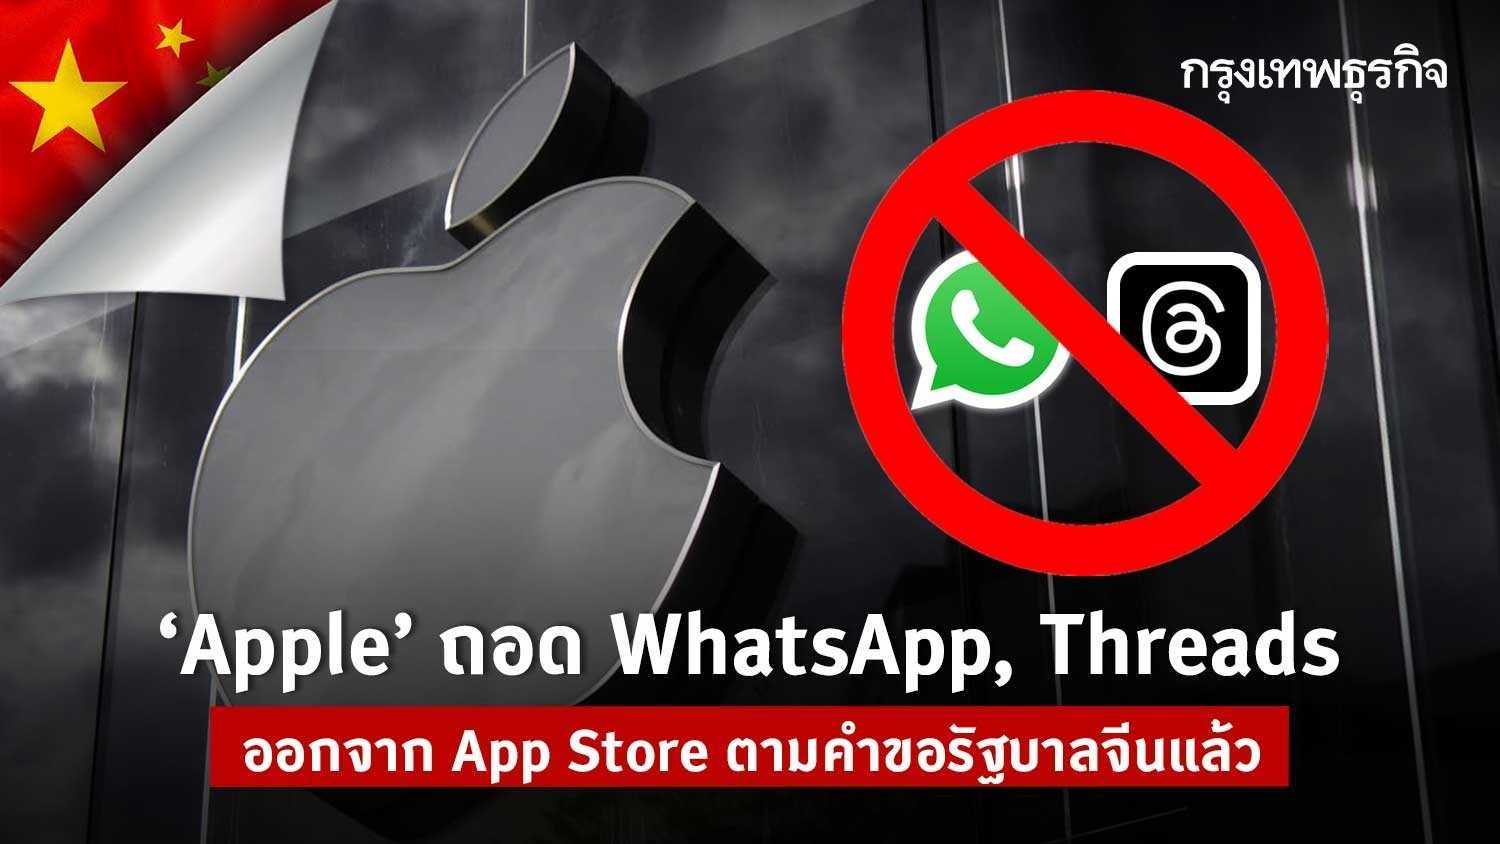 ‘apple’ ถอด whatsapp และ threads ออกจาก app store ตามคำขอรัฐบาลจีนแล้ว